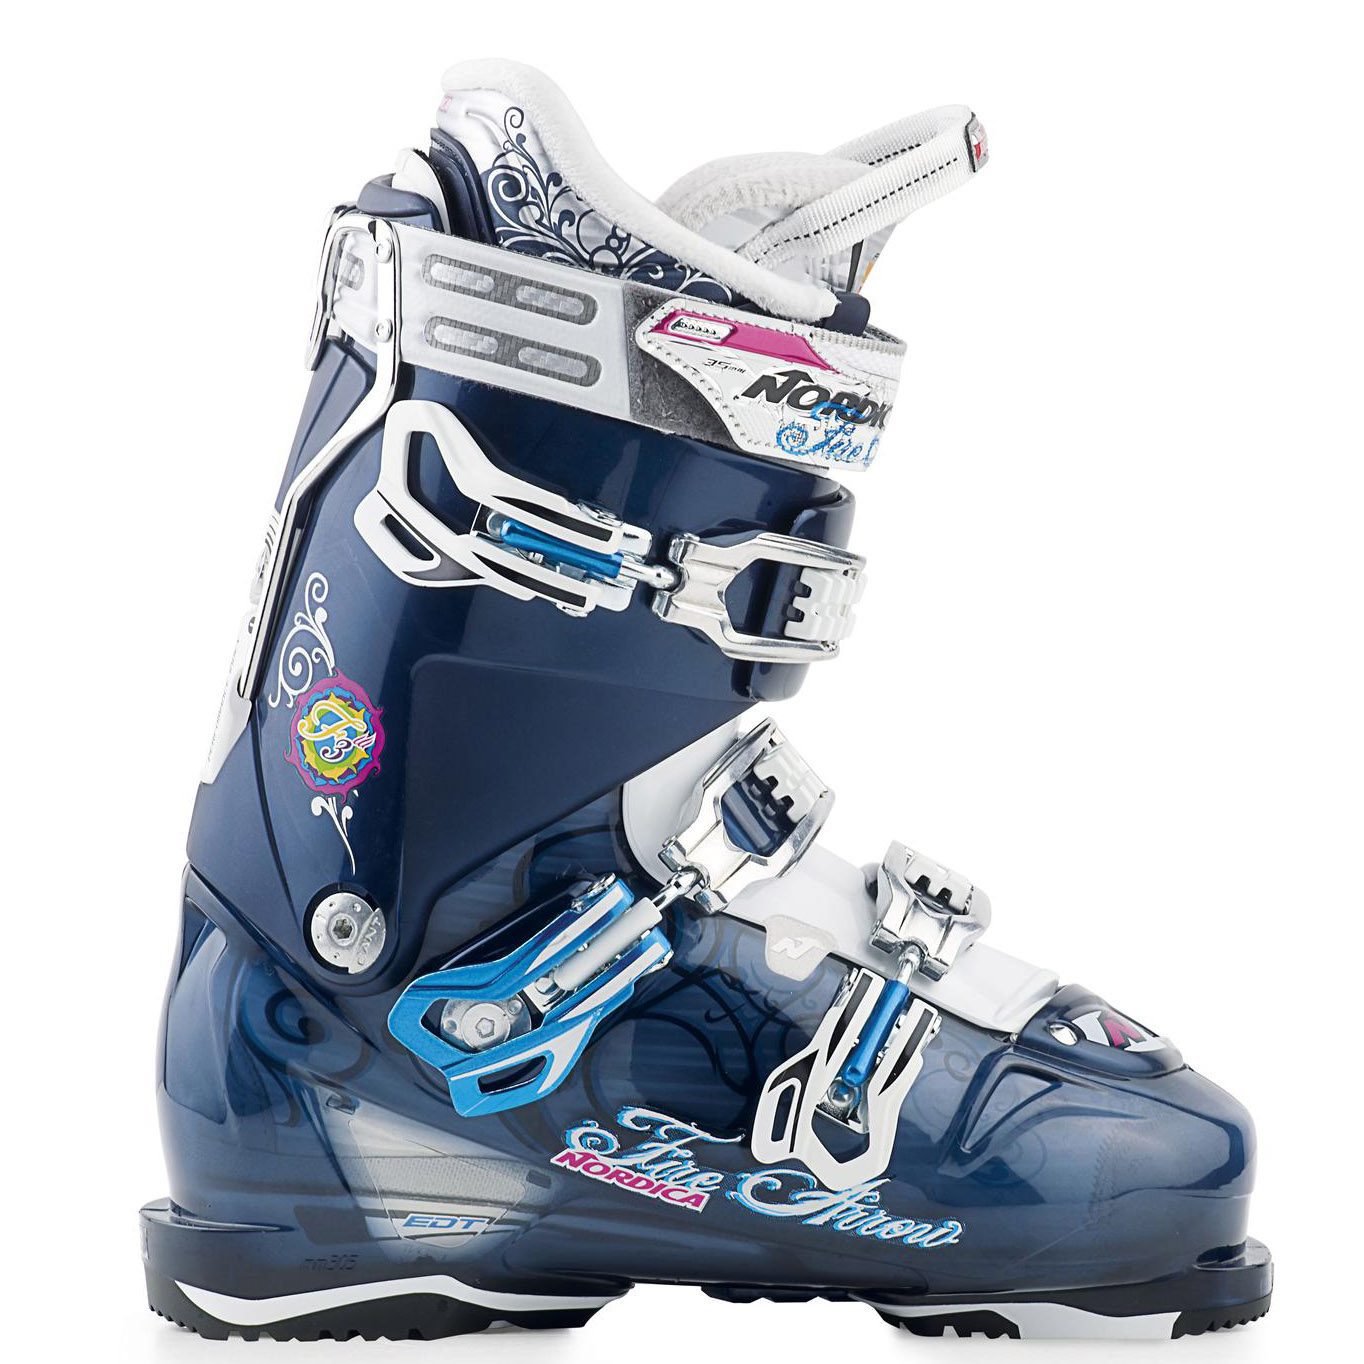 ΜΠΟΤΕΣ ΣΚΙ NORDICA Firearrow F3 Women’s Ski Boots 2013-Mπλέ λευκό